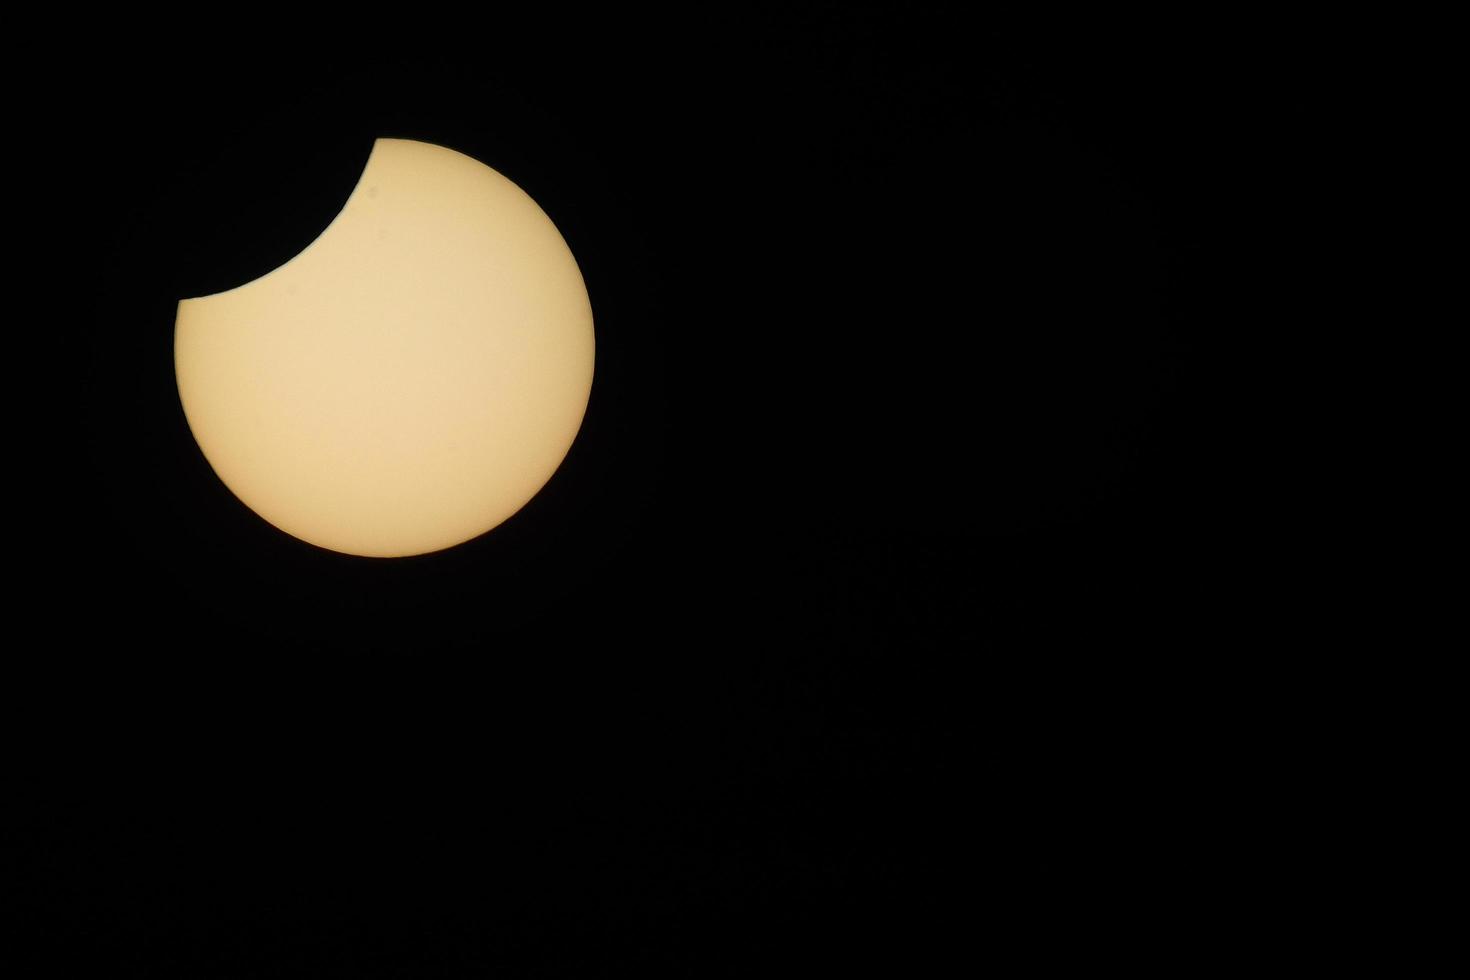 zonsverduistering met maan verschijnt foto